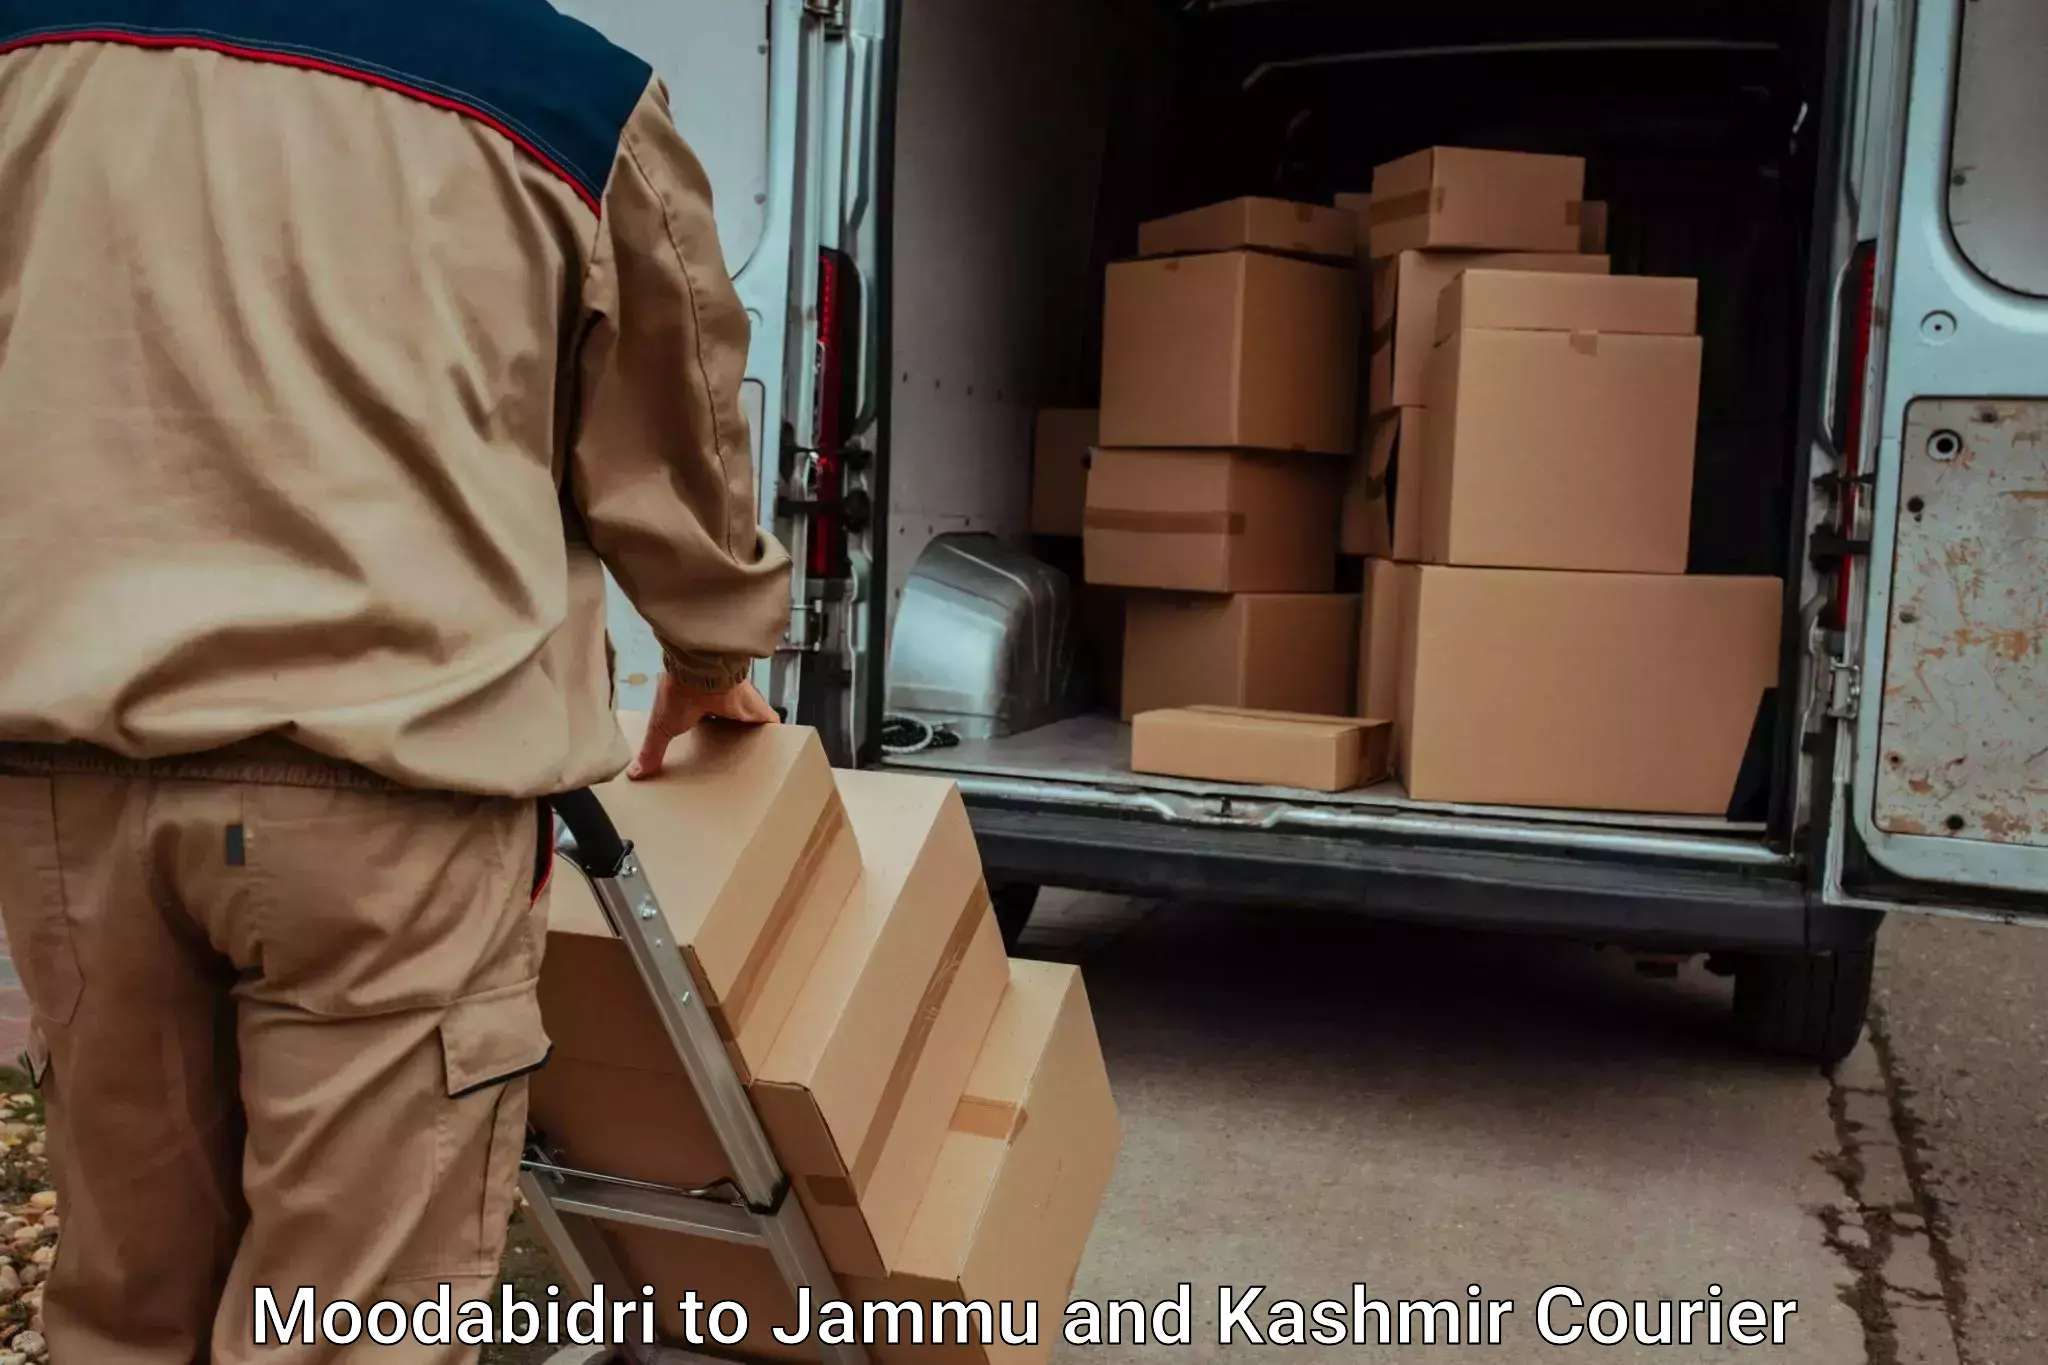 Furniture delivery service Moodabidri to Doda